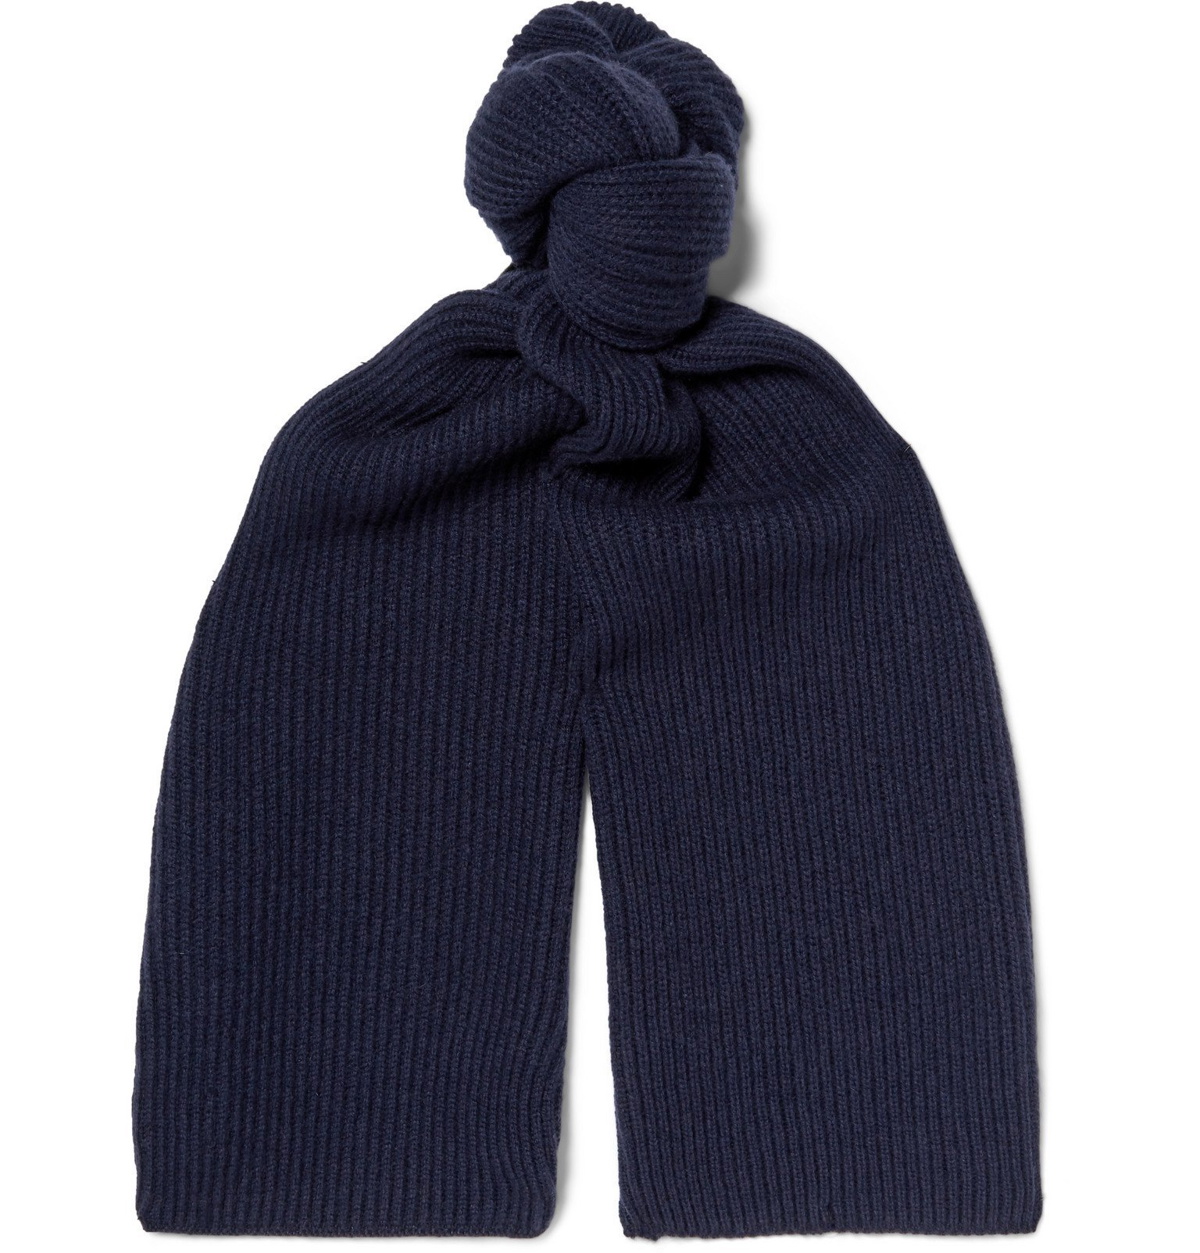 JOHNSTONS OF ELGIN Cashmere hat, scarf and gloves set